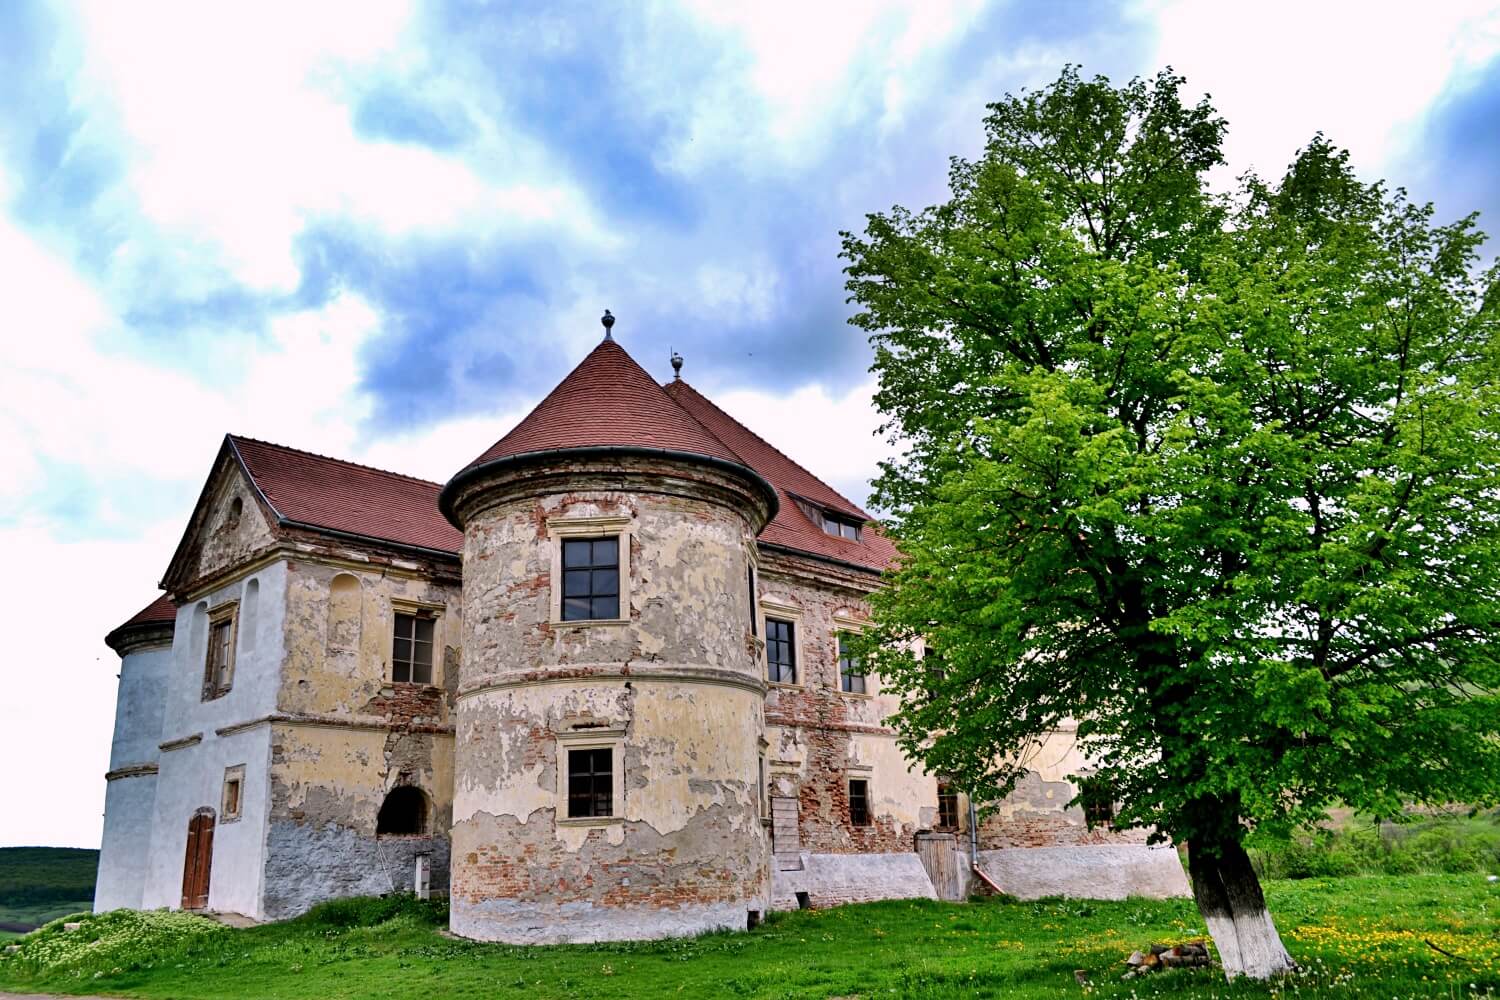 Ozd Pekri-Radak castle